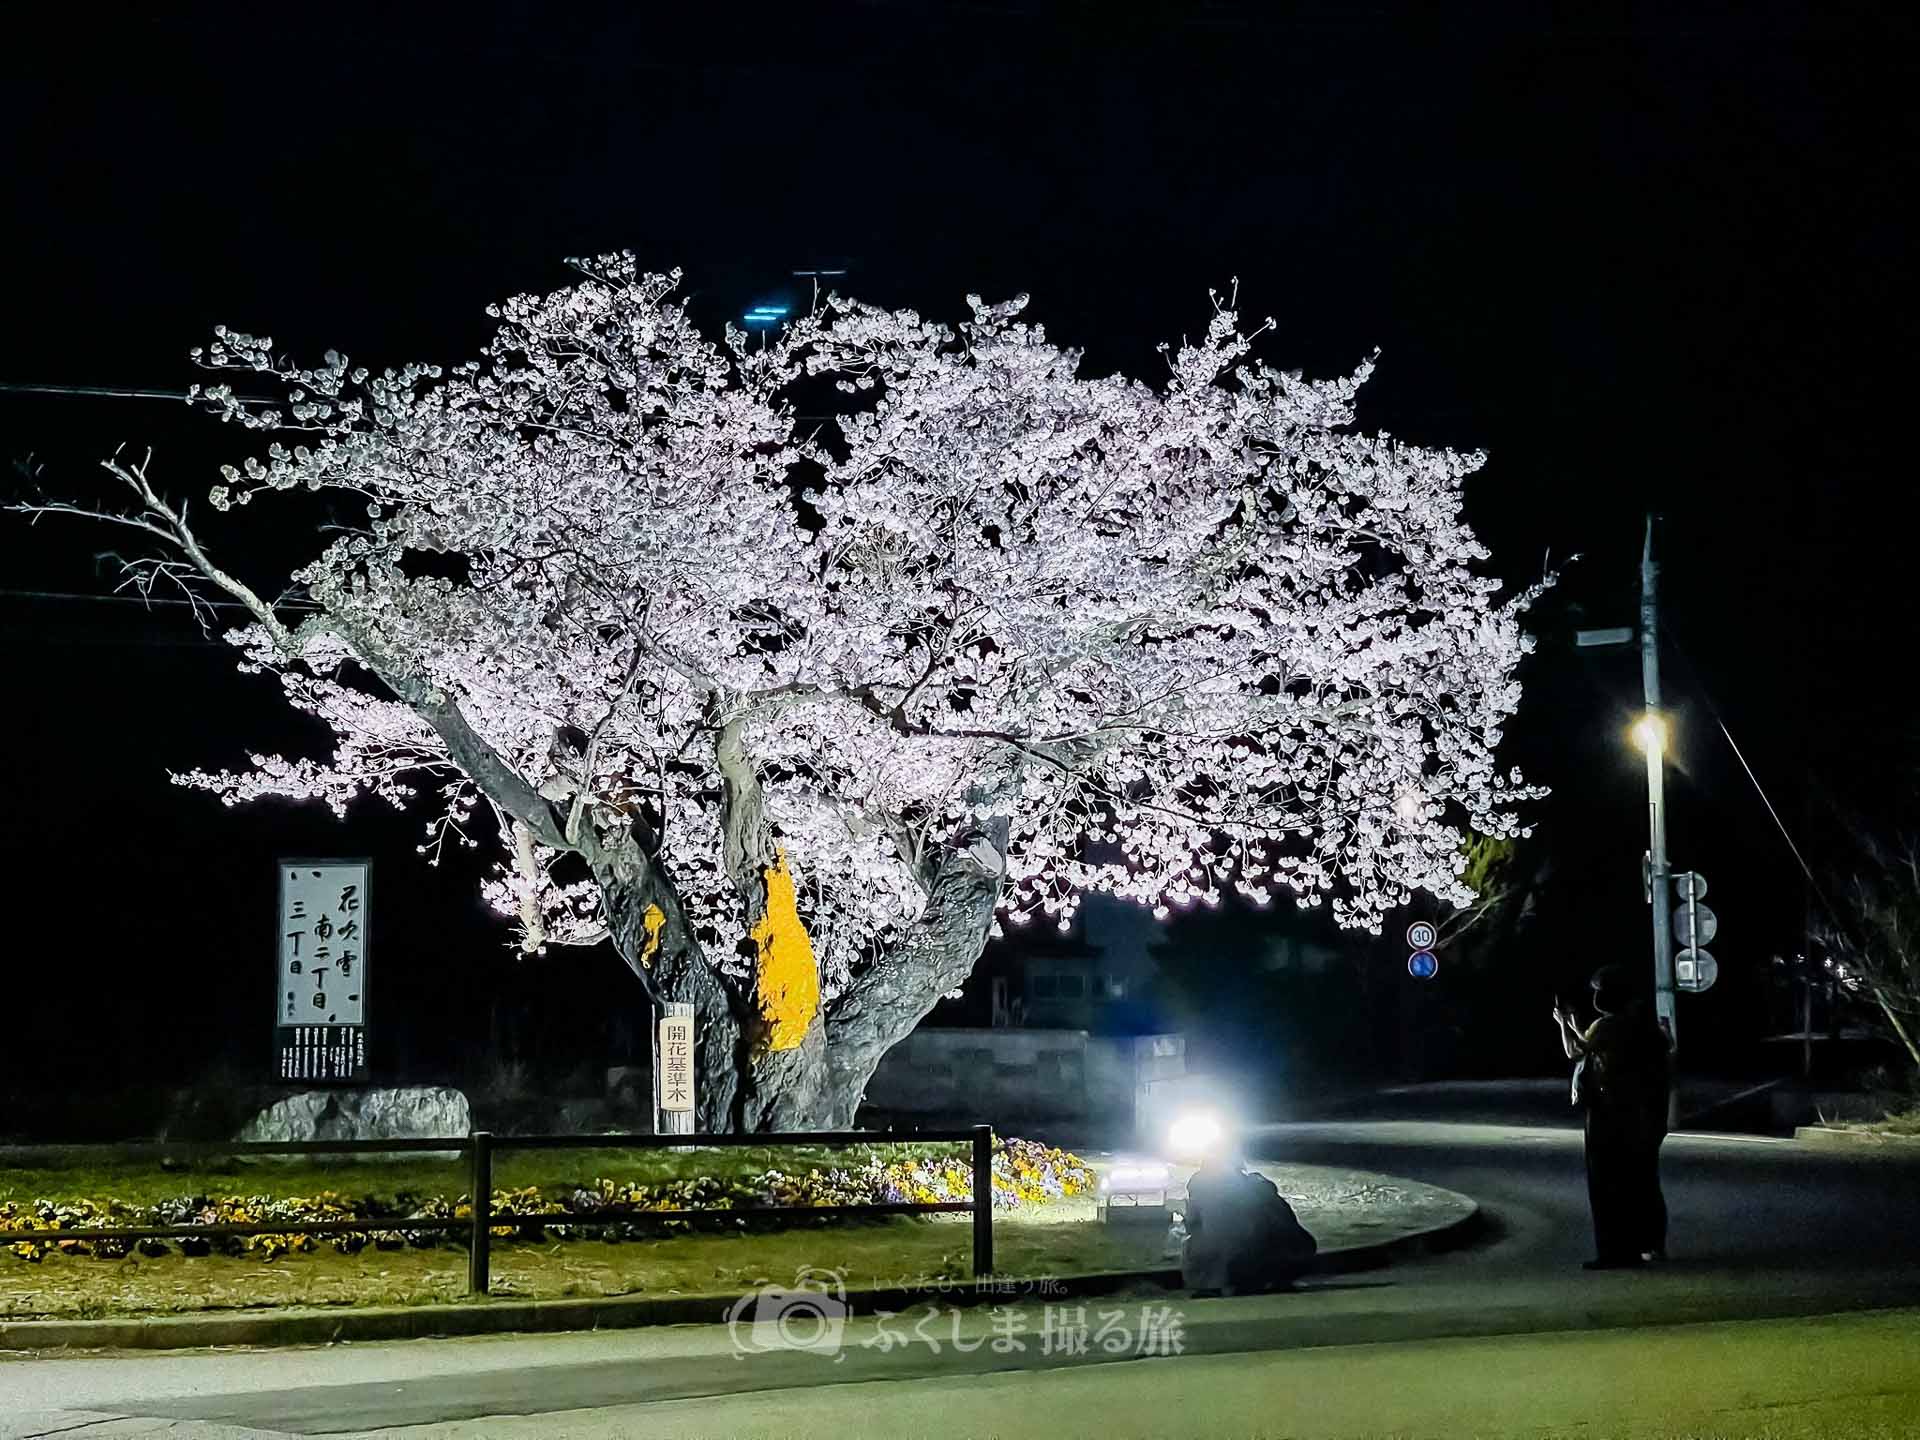 夜の森桜並木のライトアップ